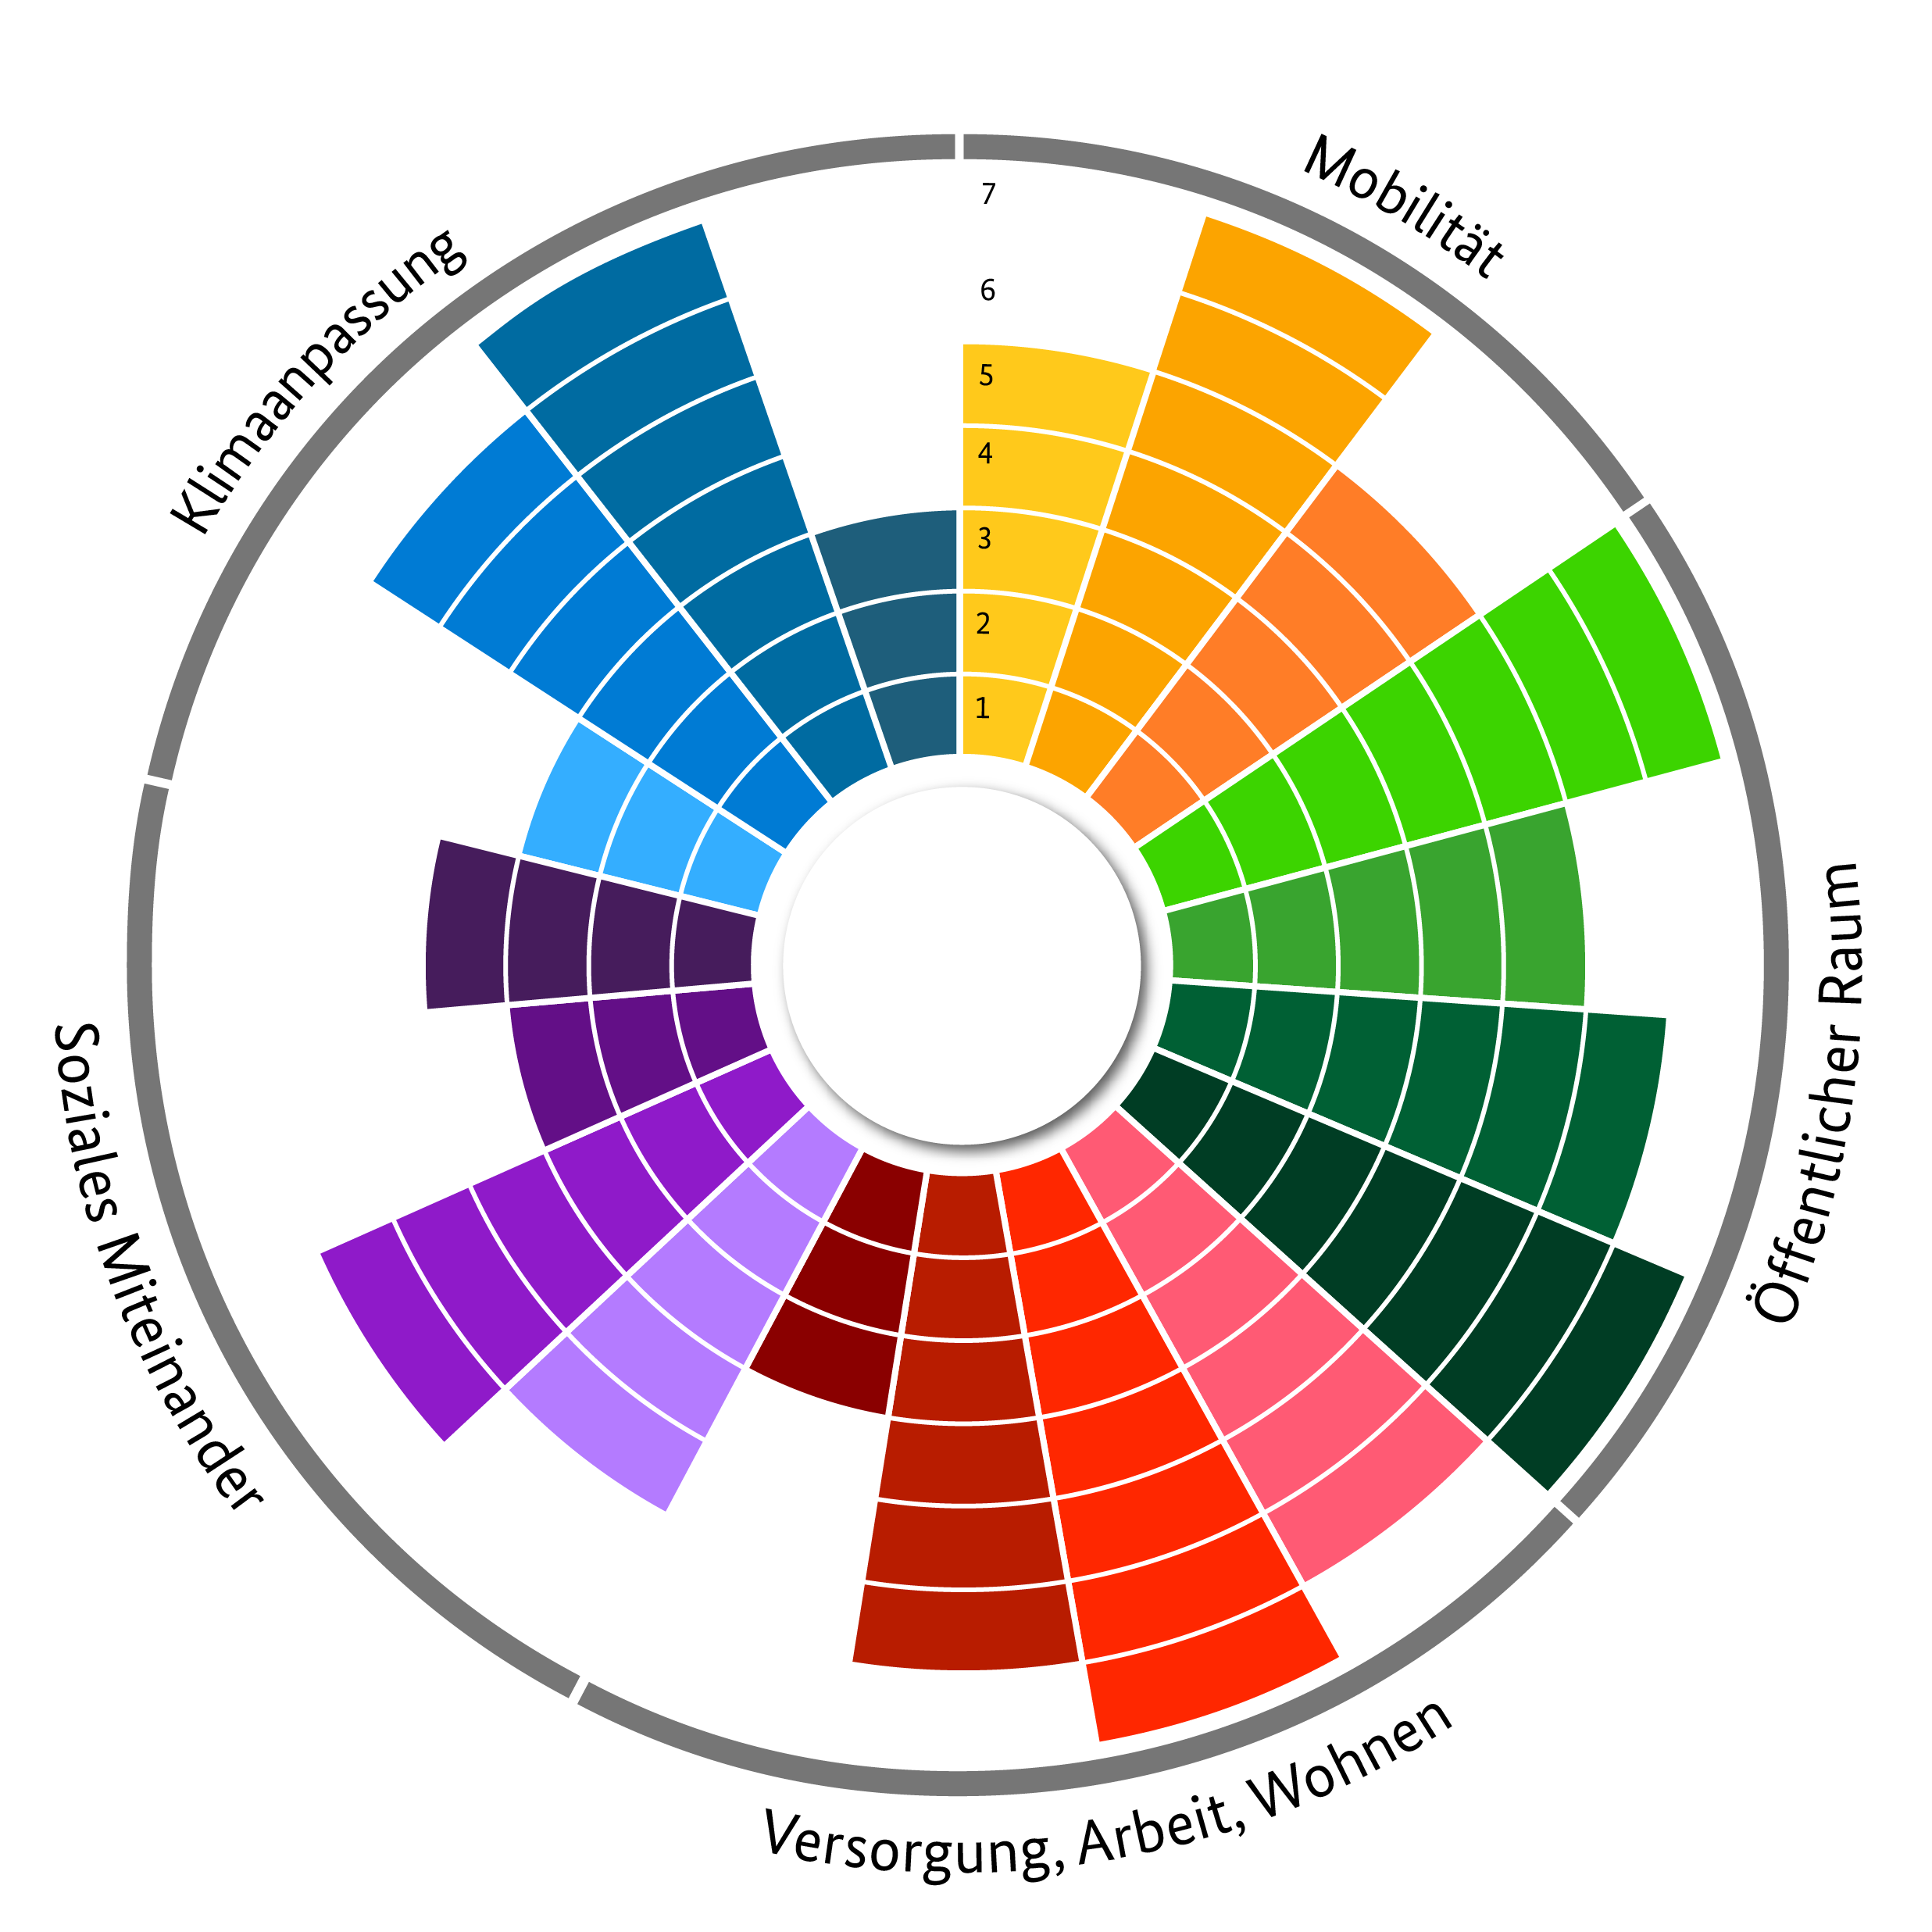 Schaubild eines Kreisdiagramms mit 15 unterschiedlich eingefärbten Kategorien, unterteilt in vier Themenbereiche: Mobilität, Öffentlicher Raum, Versorgung/Arbeit/Wohnen und Soziales Miteinander.